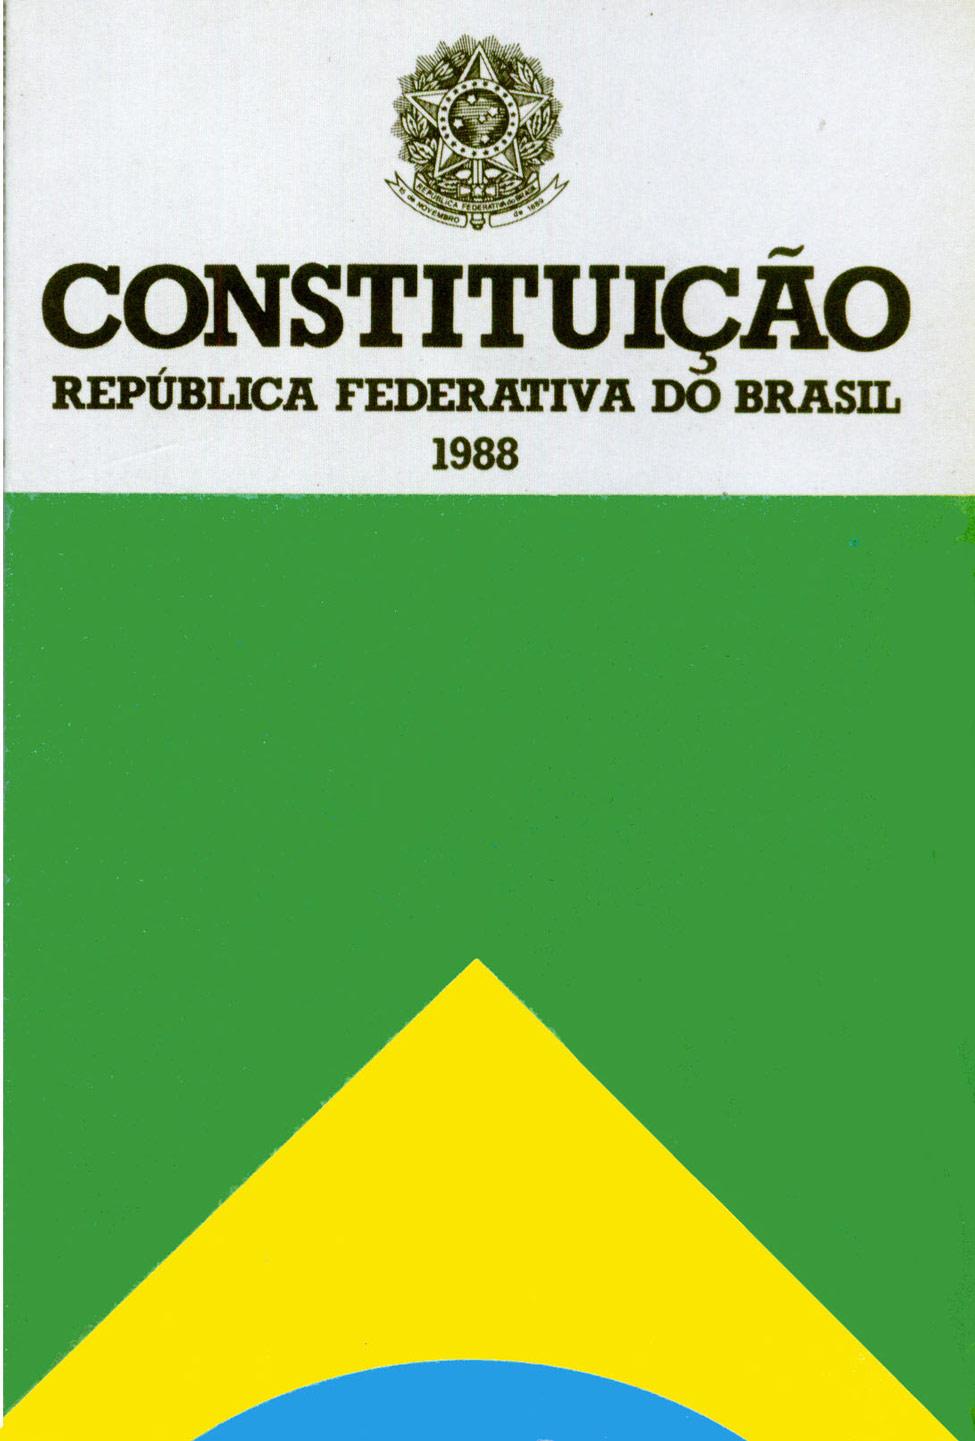 Brasil - Cons[tuição Federal de 1988 Capítulo VI Do Meio Ambiente: Bem coleivo Arigo 225 Todos têm direito ao meio ambiente ecologicamente equilibrado, bem de uso comum do povo e